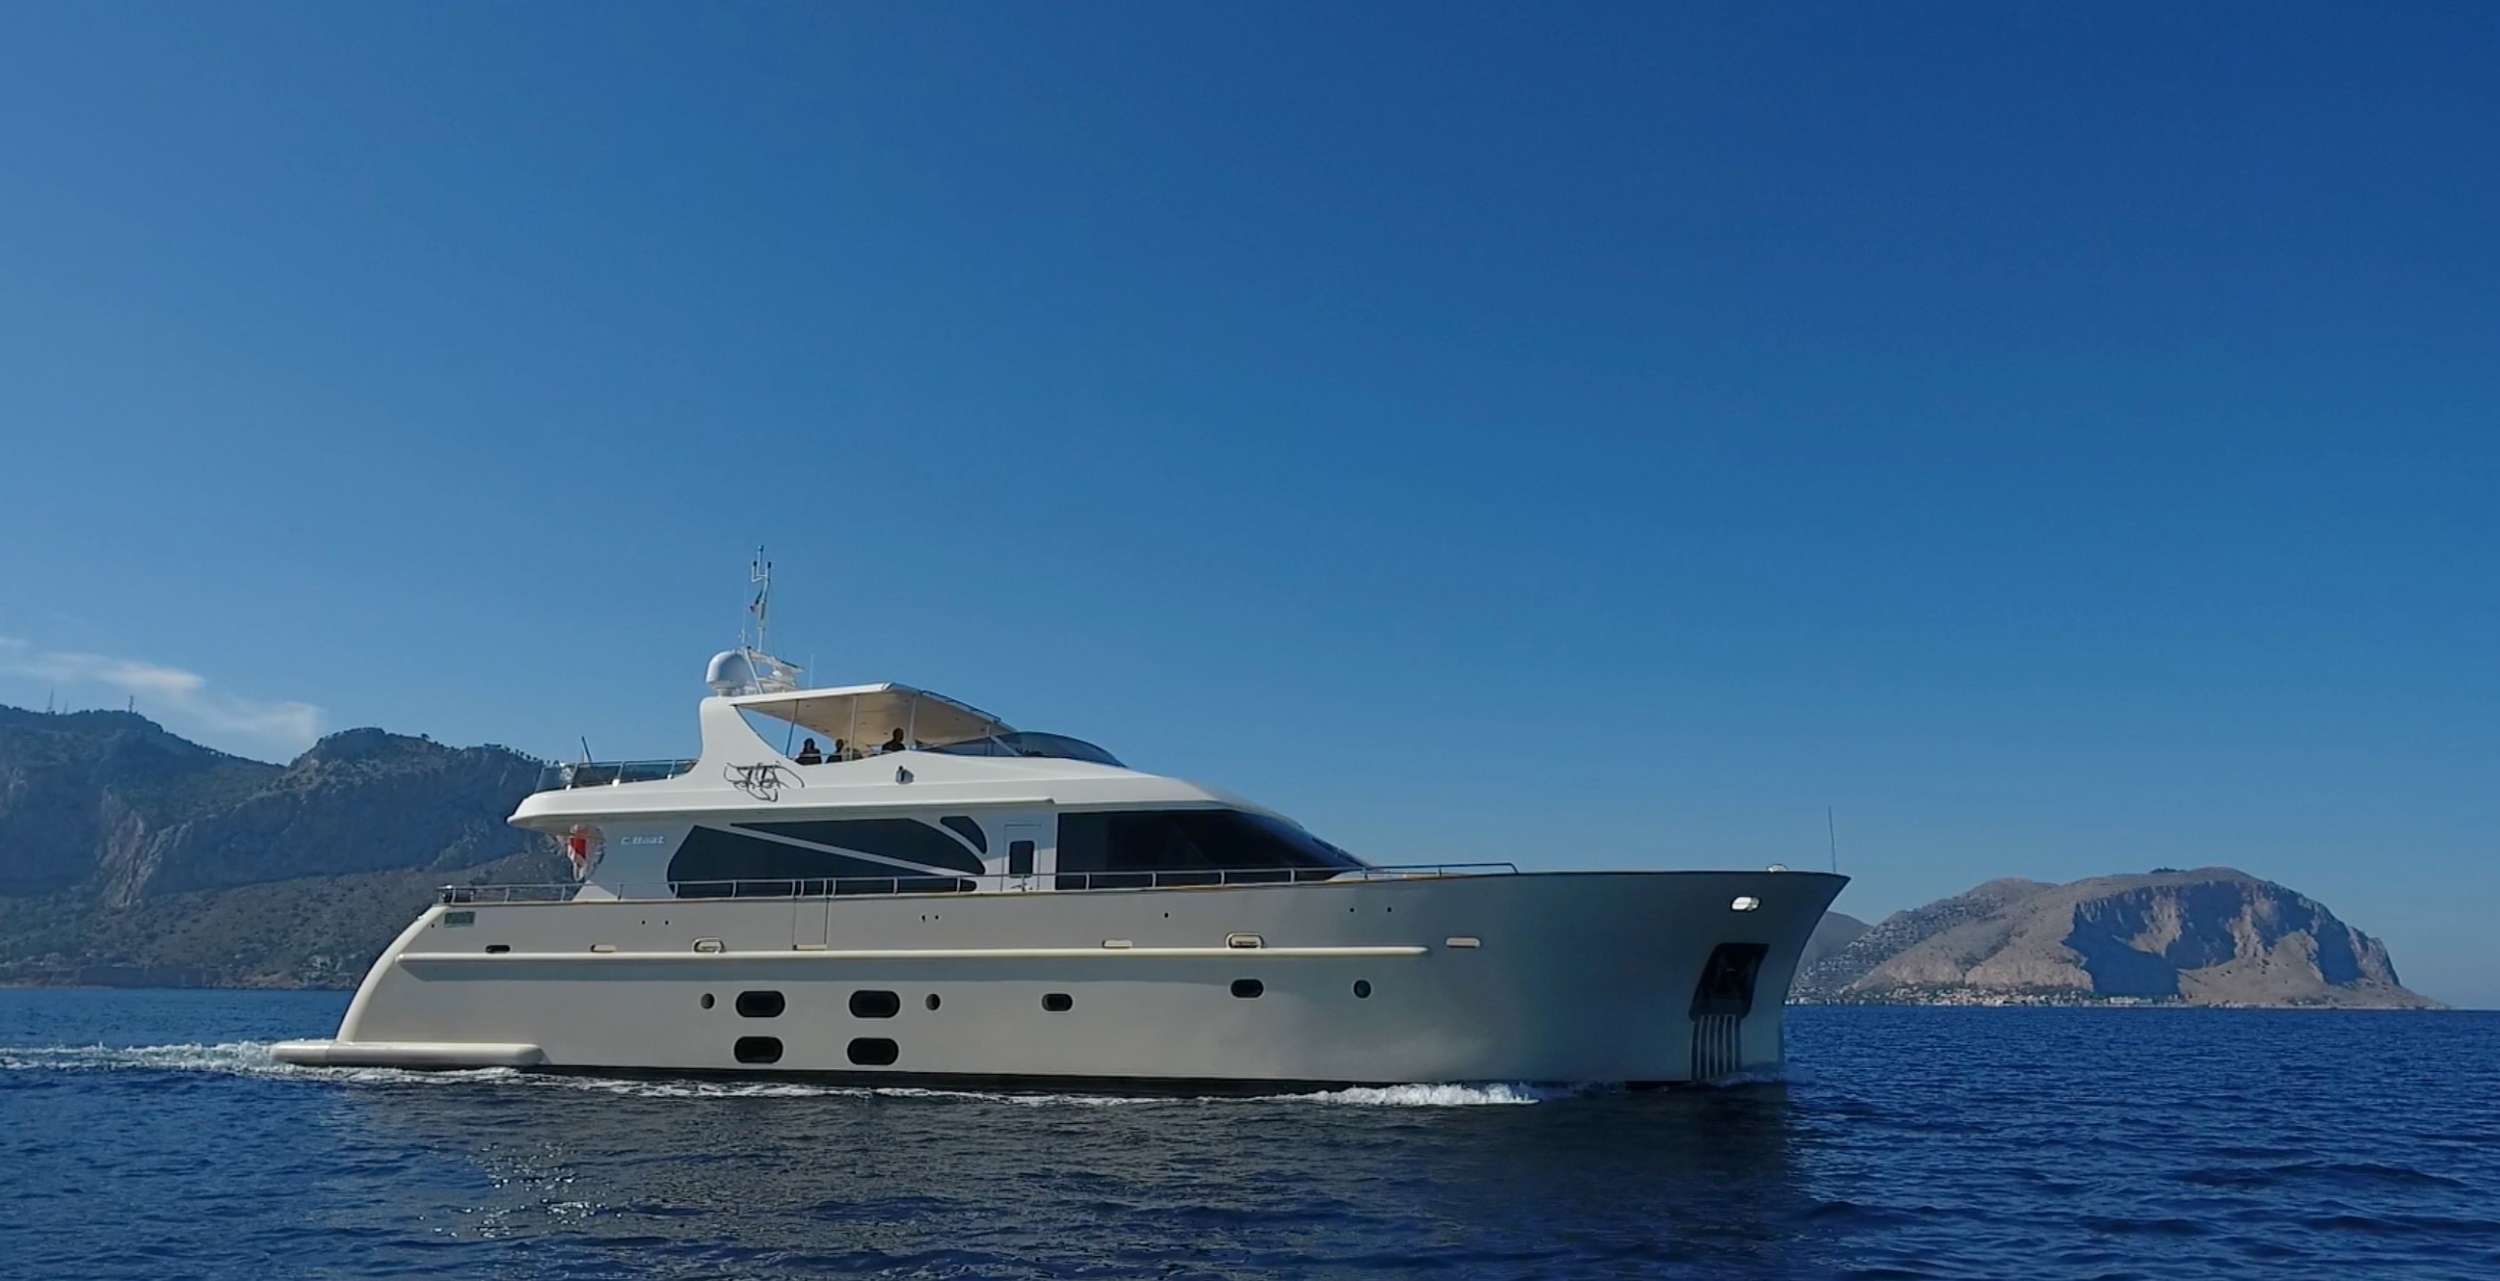 aria c - Yacht Charter Taranto & Boat hire in Riviera, Cors, Sard, Italy, Spain, Turkey, Croatia, Greece 1